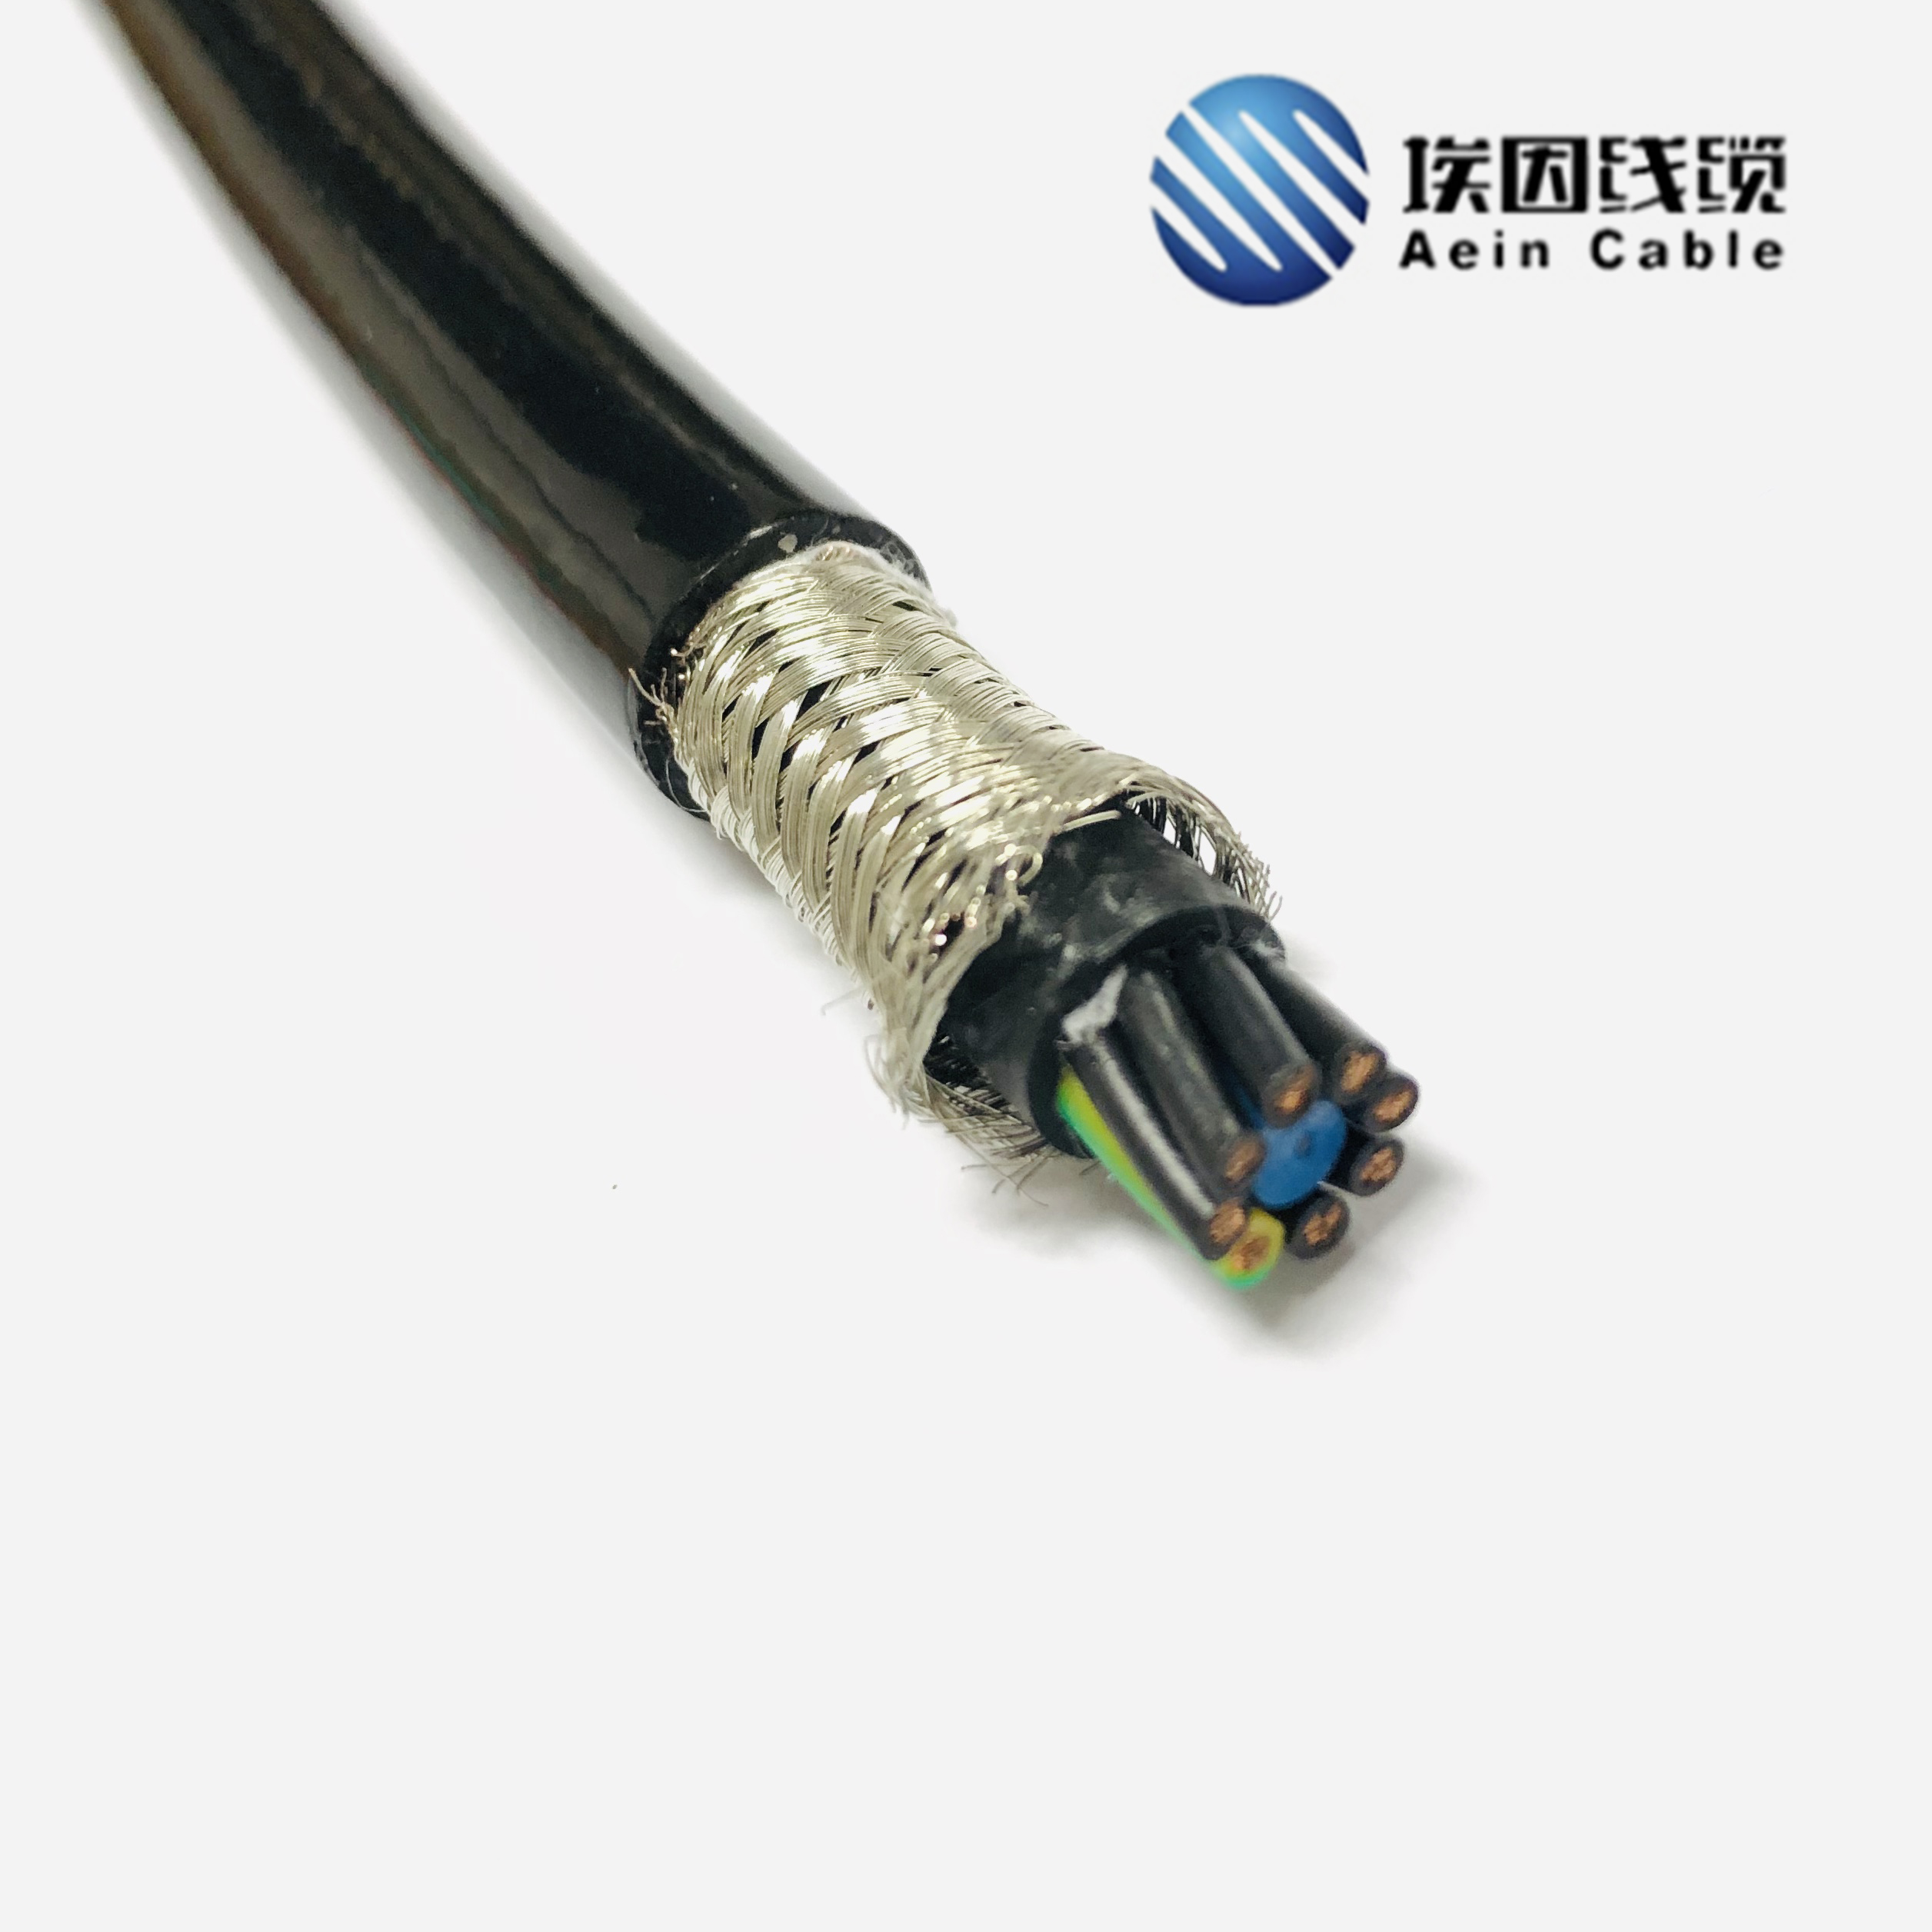 4 G 185 双屏蔽din vde 0250的变频器专用电机电源电缆  双屏蔽DI 双屏蔽DIN VDE0250线缆